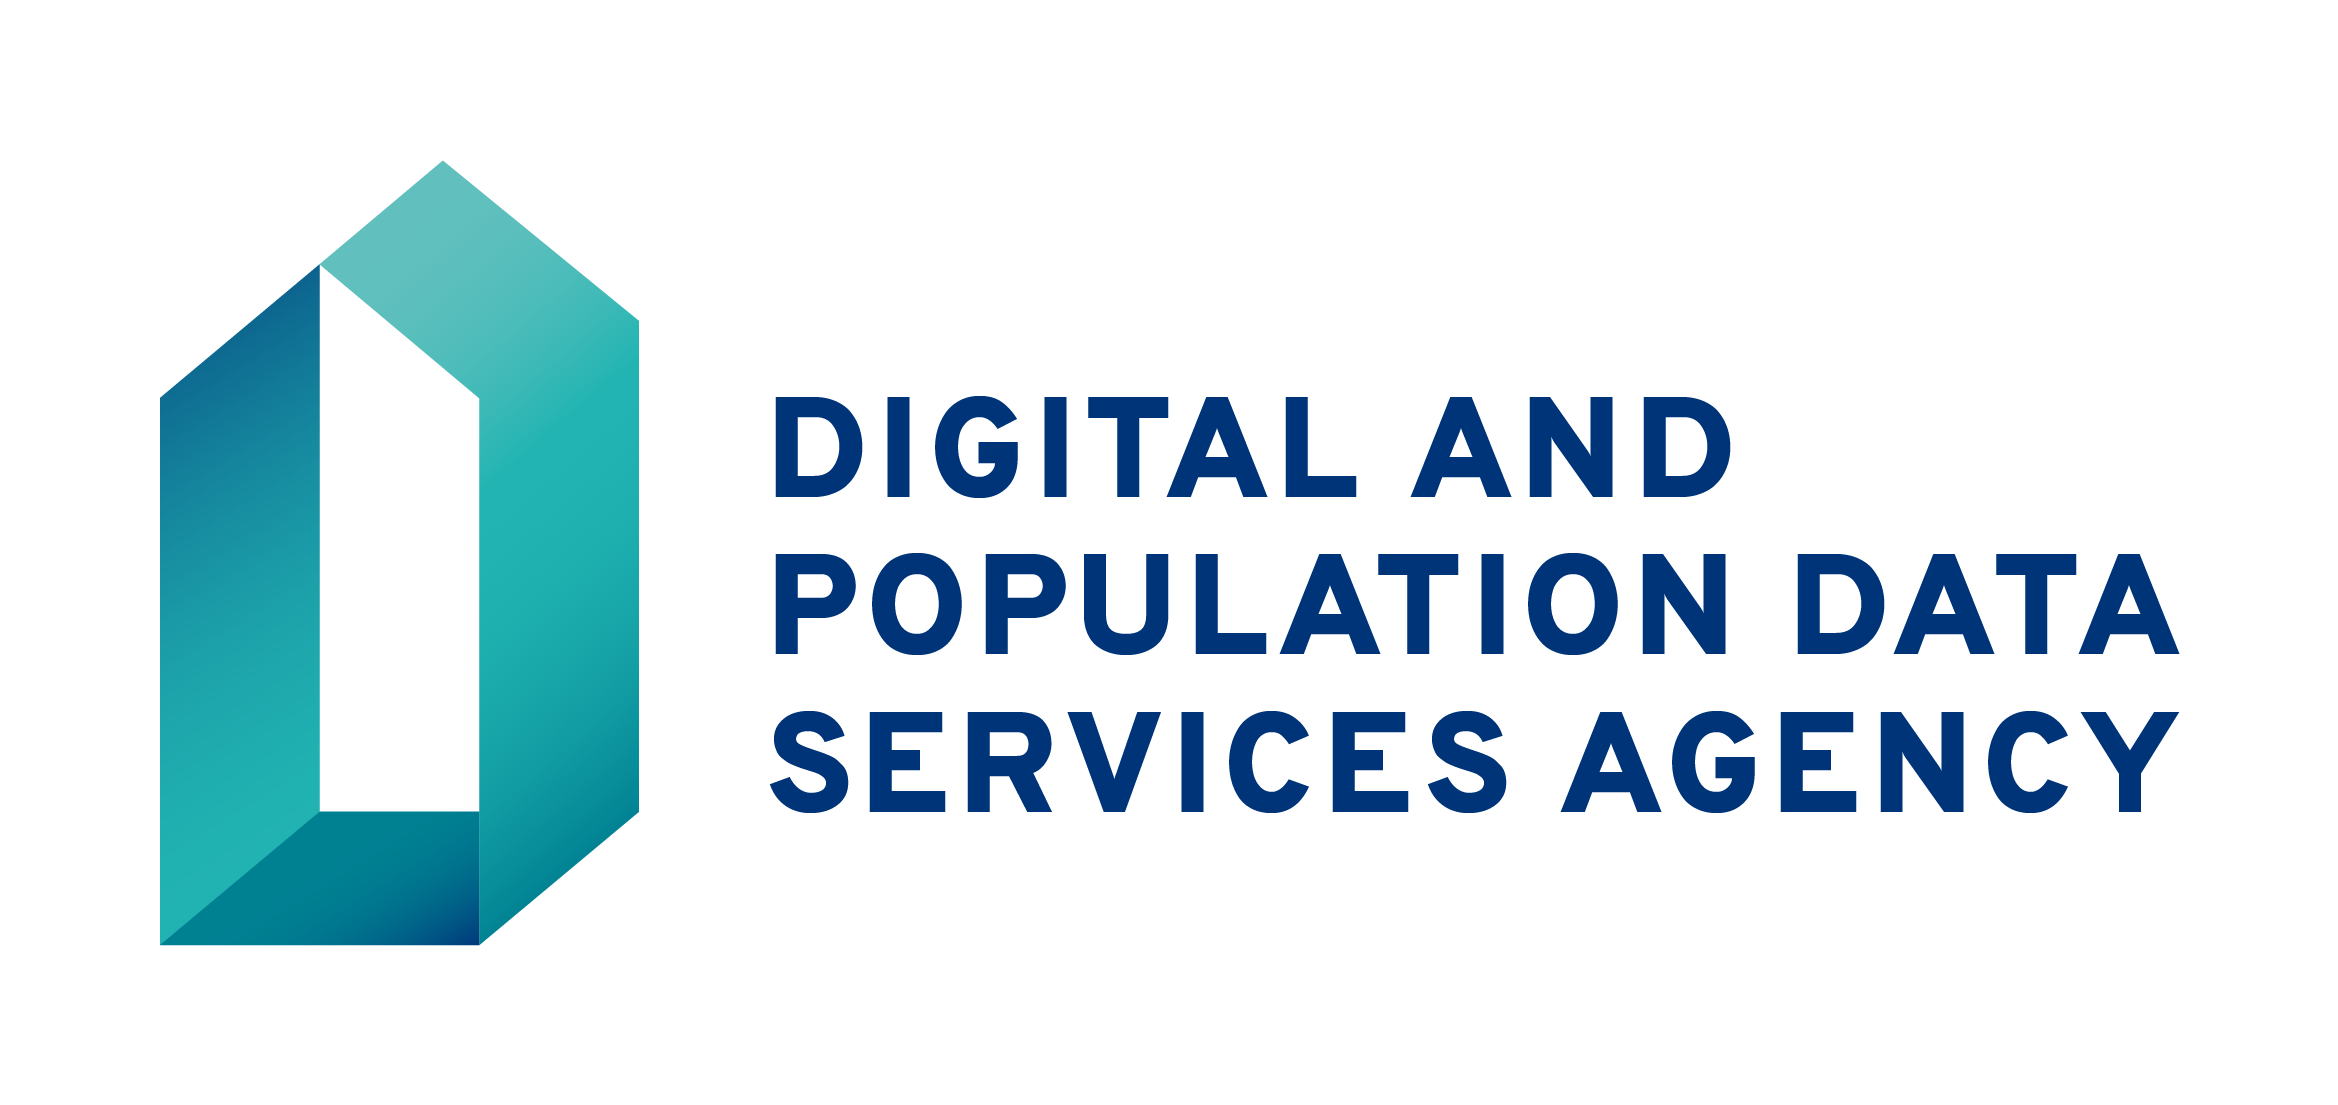 Digi- ja väestötietoviraston logo englanniksi, perusmuotoinen